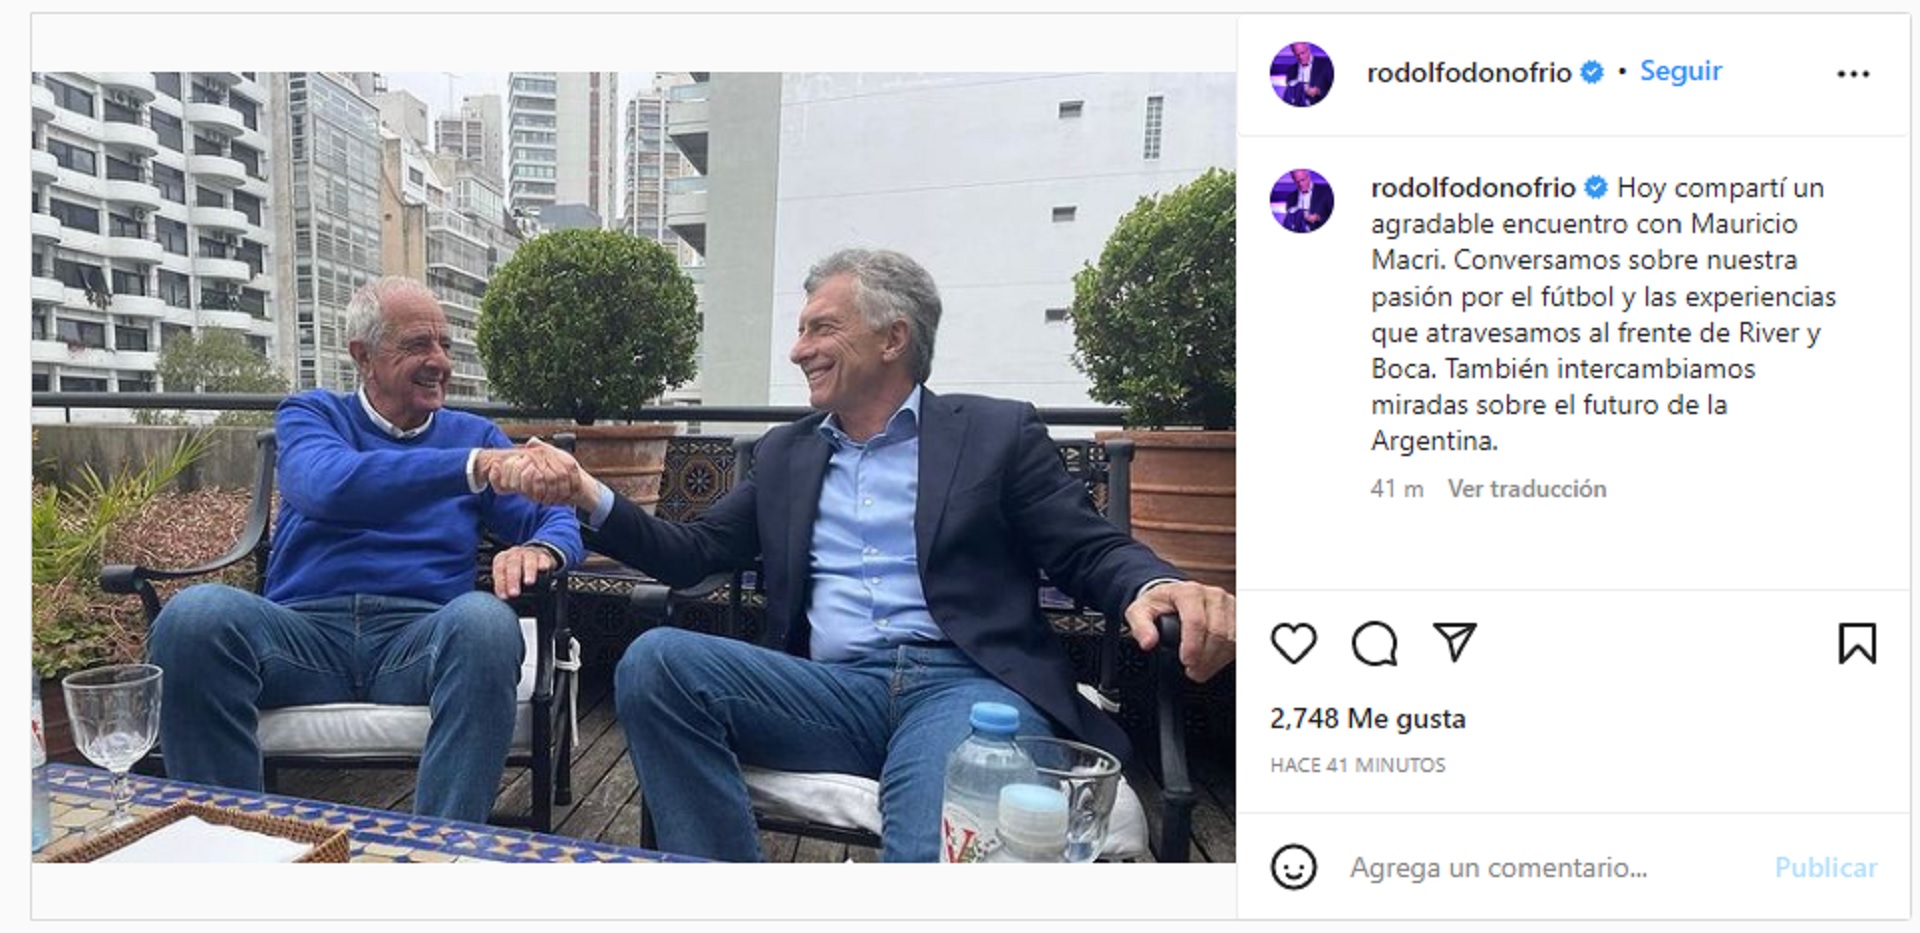 Sugestiva foto de Mauricio Macri junto a Rodolfo D'Onofrio: “Hay mucho por  hacer trabajando juntos” - Infobae